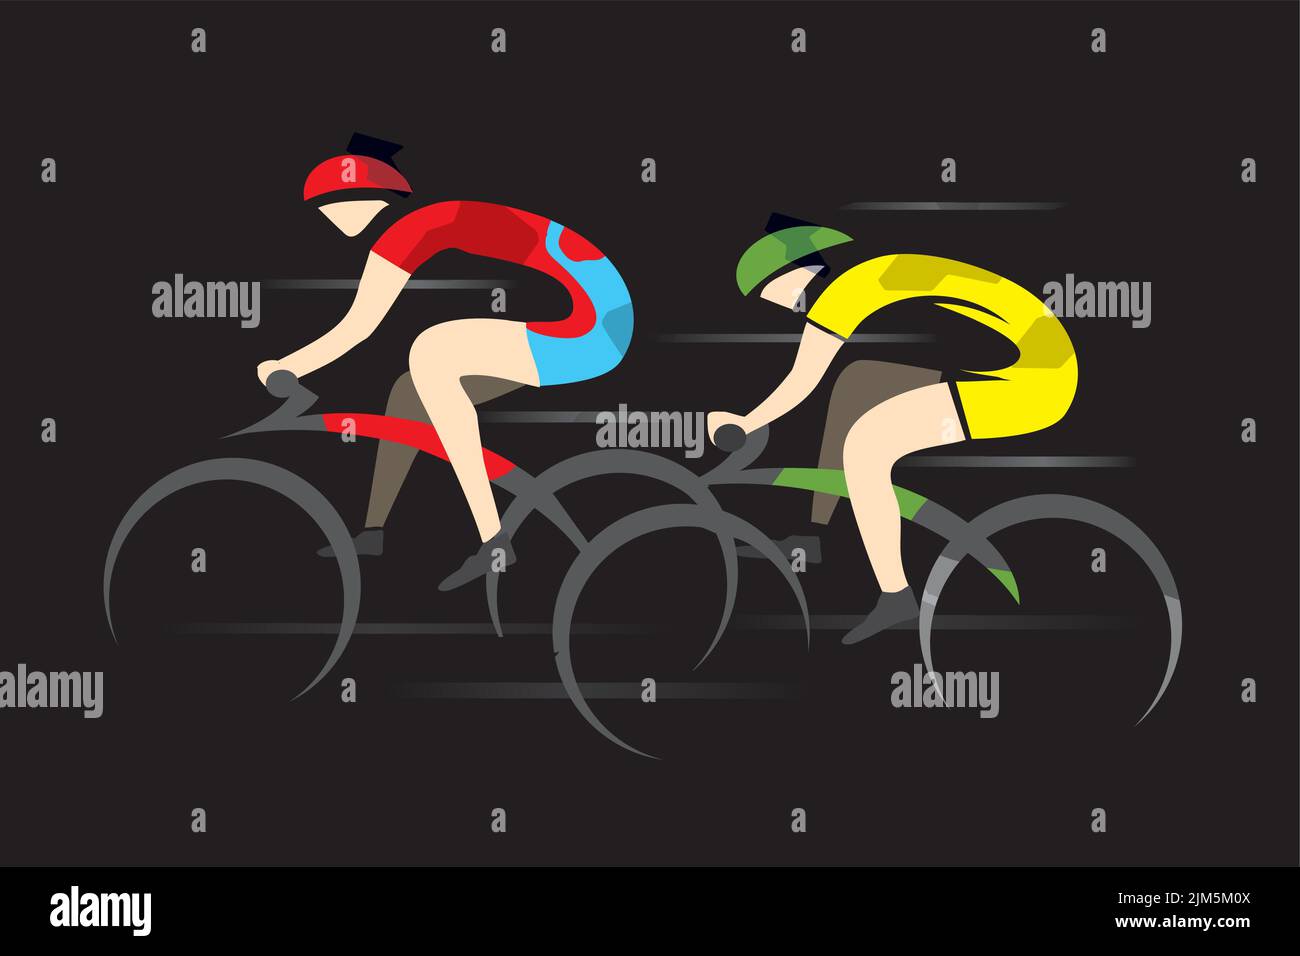 Zwei Sport-Rennradfahrer, volle Geschwindigkeit. Zwei Rennfahrer. Bunte stilisierte Illustration, isoliert auf schwarzem Hintergrund. Vektor verfügbar. Stock Vektor